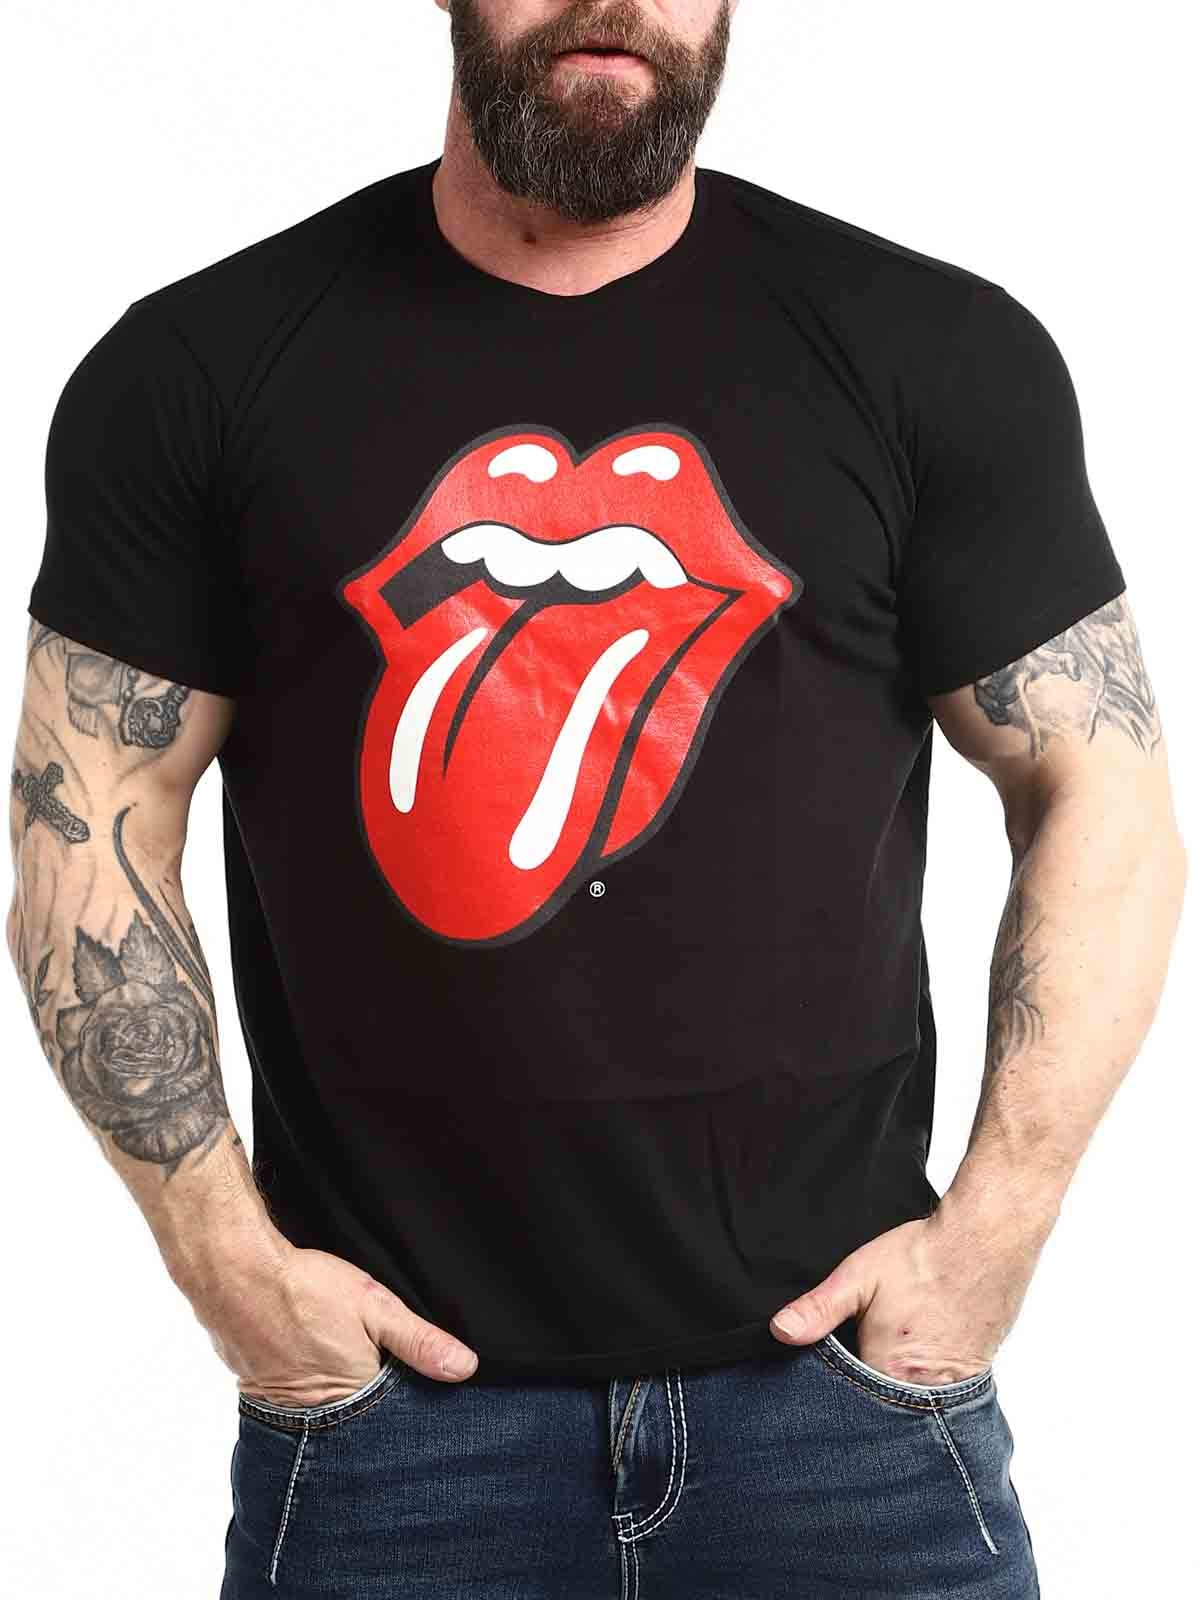 Rolling Stones Tongue Tshirt_1.jpg